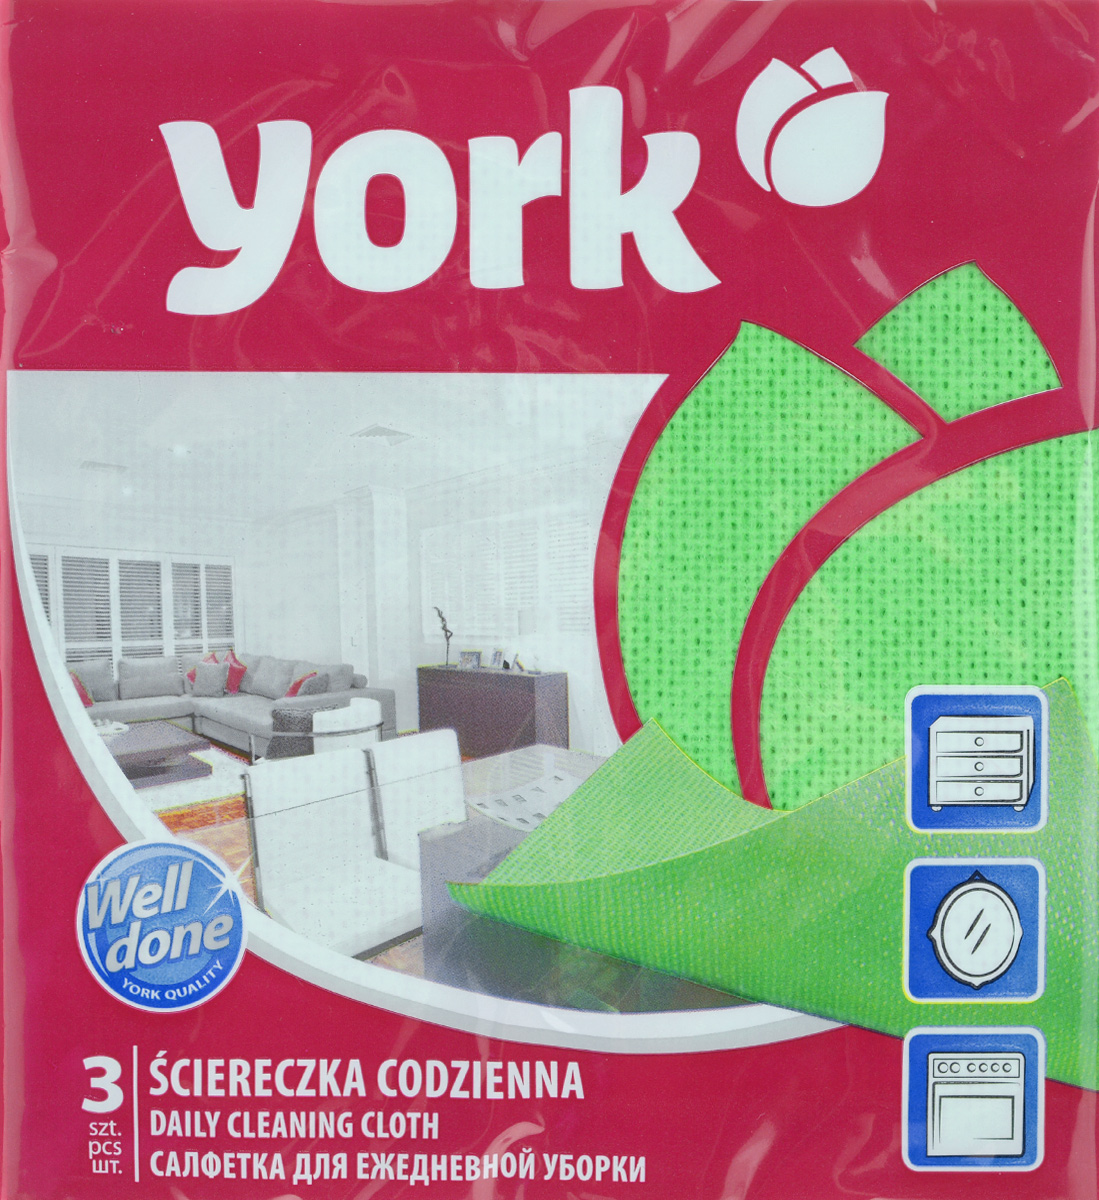     York "", : , 37  40 , 3 